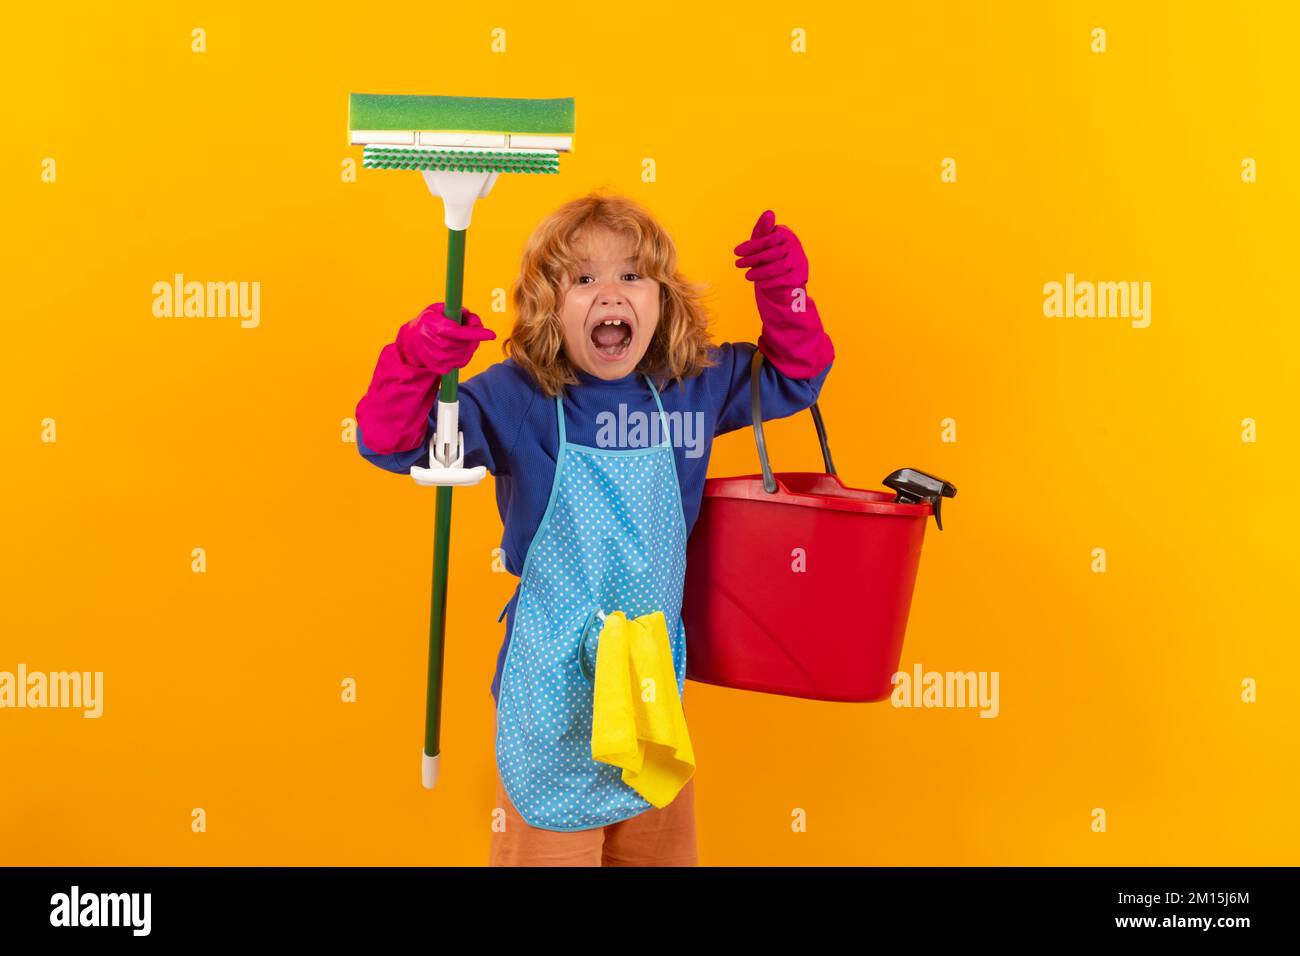 Retrato de la limpieza infantil, el crecimiento del concepto, el desarrollo, las relaciones familiares. Concepto de limpieza y limpieza de casa. uso infantil duster y guantes para Foto de stock